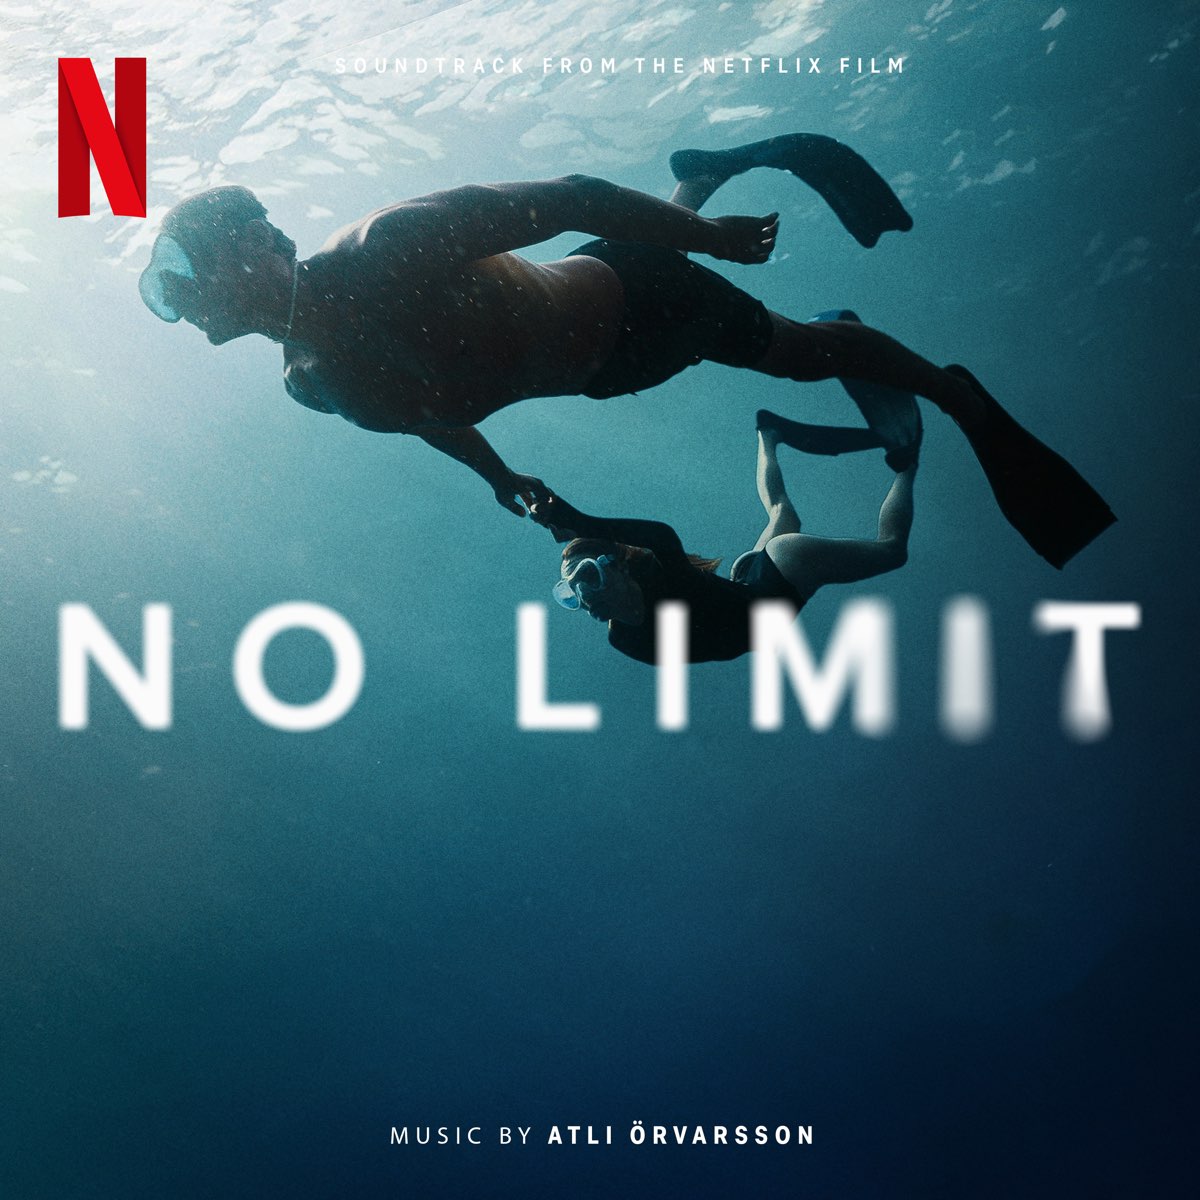 No Limit / Sous Emprise (Soundtrack from the Netflix Film) – Album von Atli Örvarsson